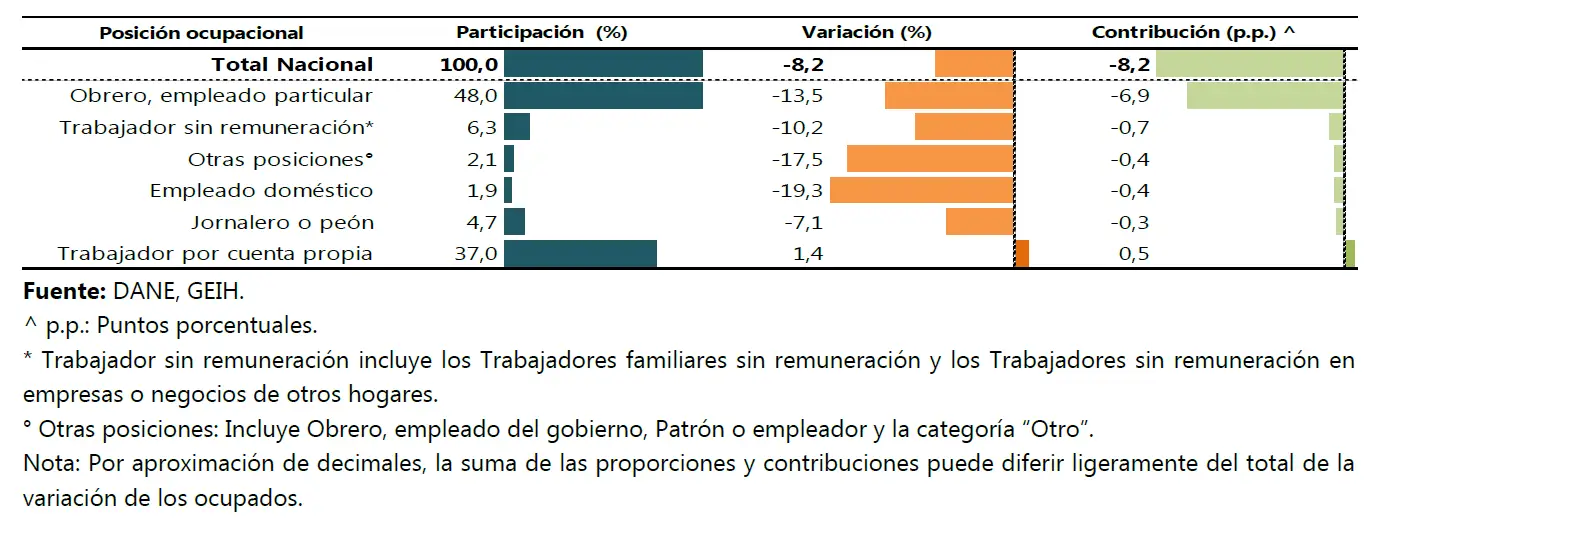  Participación, variación y contribución a la variación de la población ocupada joven según posición ocupacional.